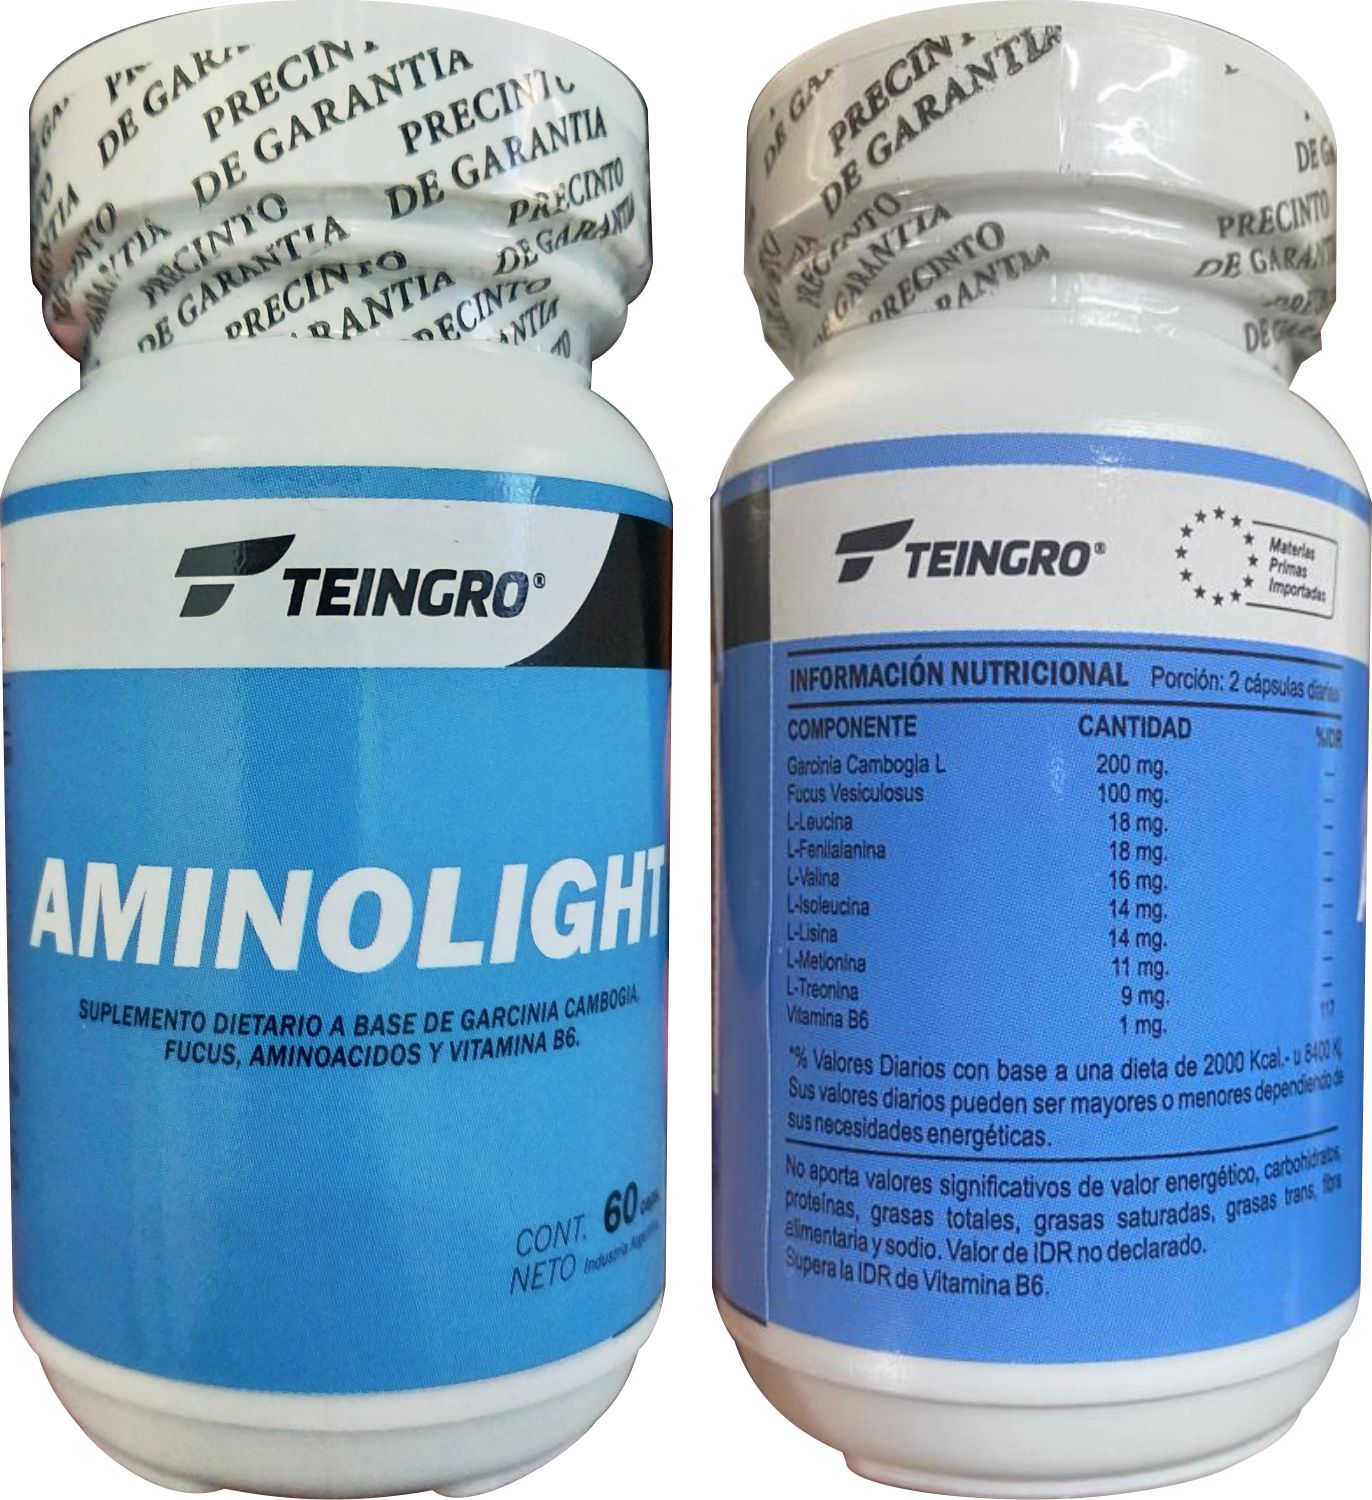 aminolight image